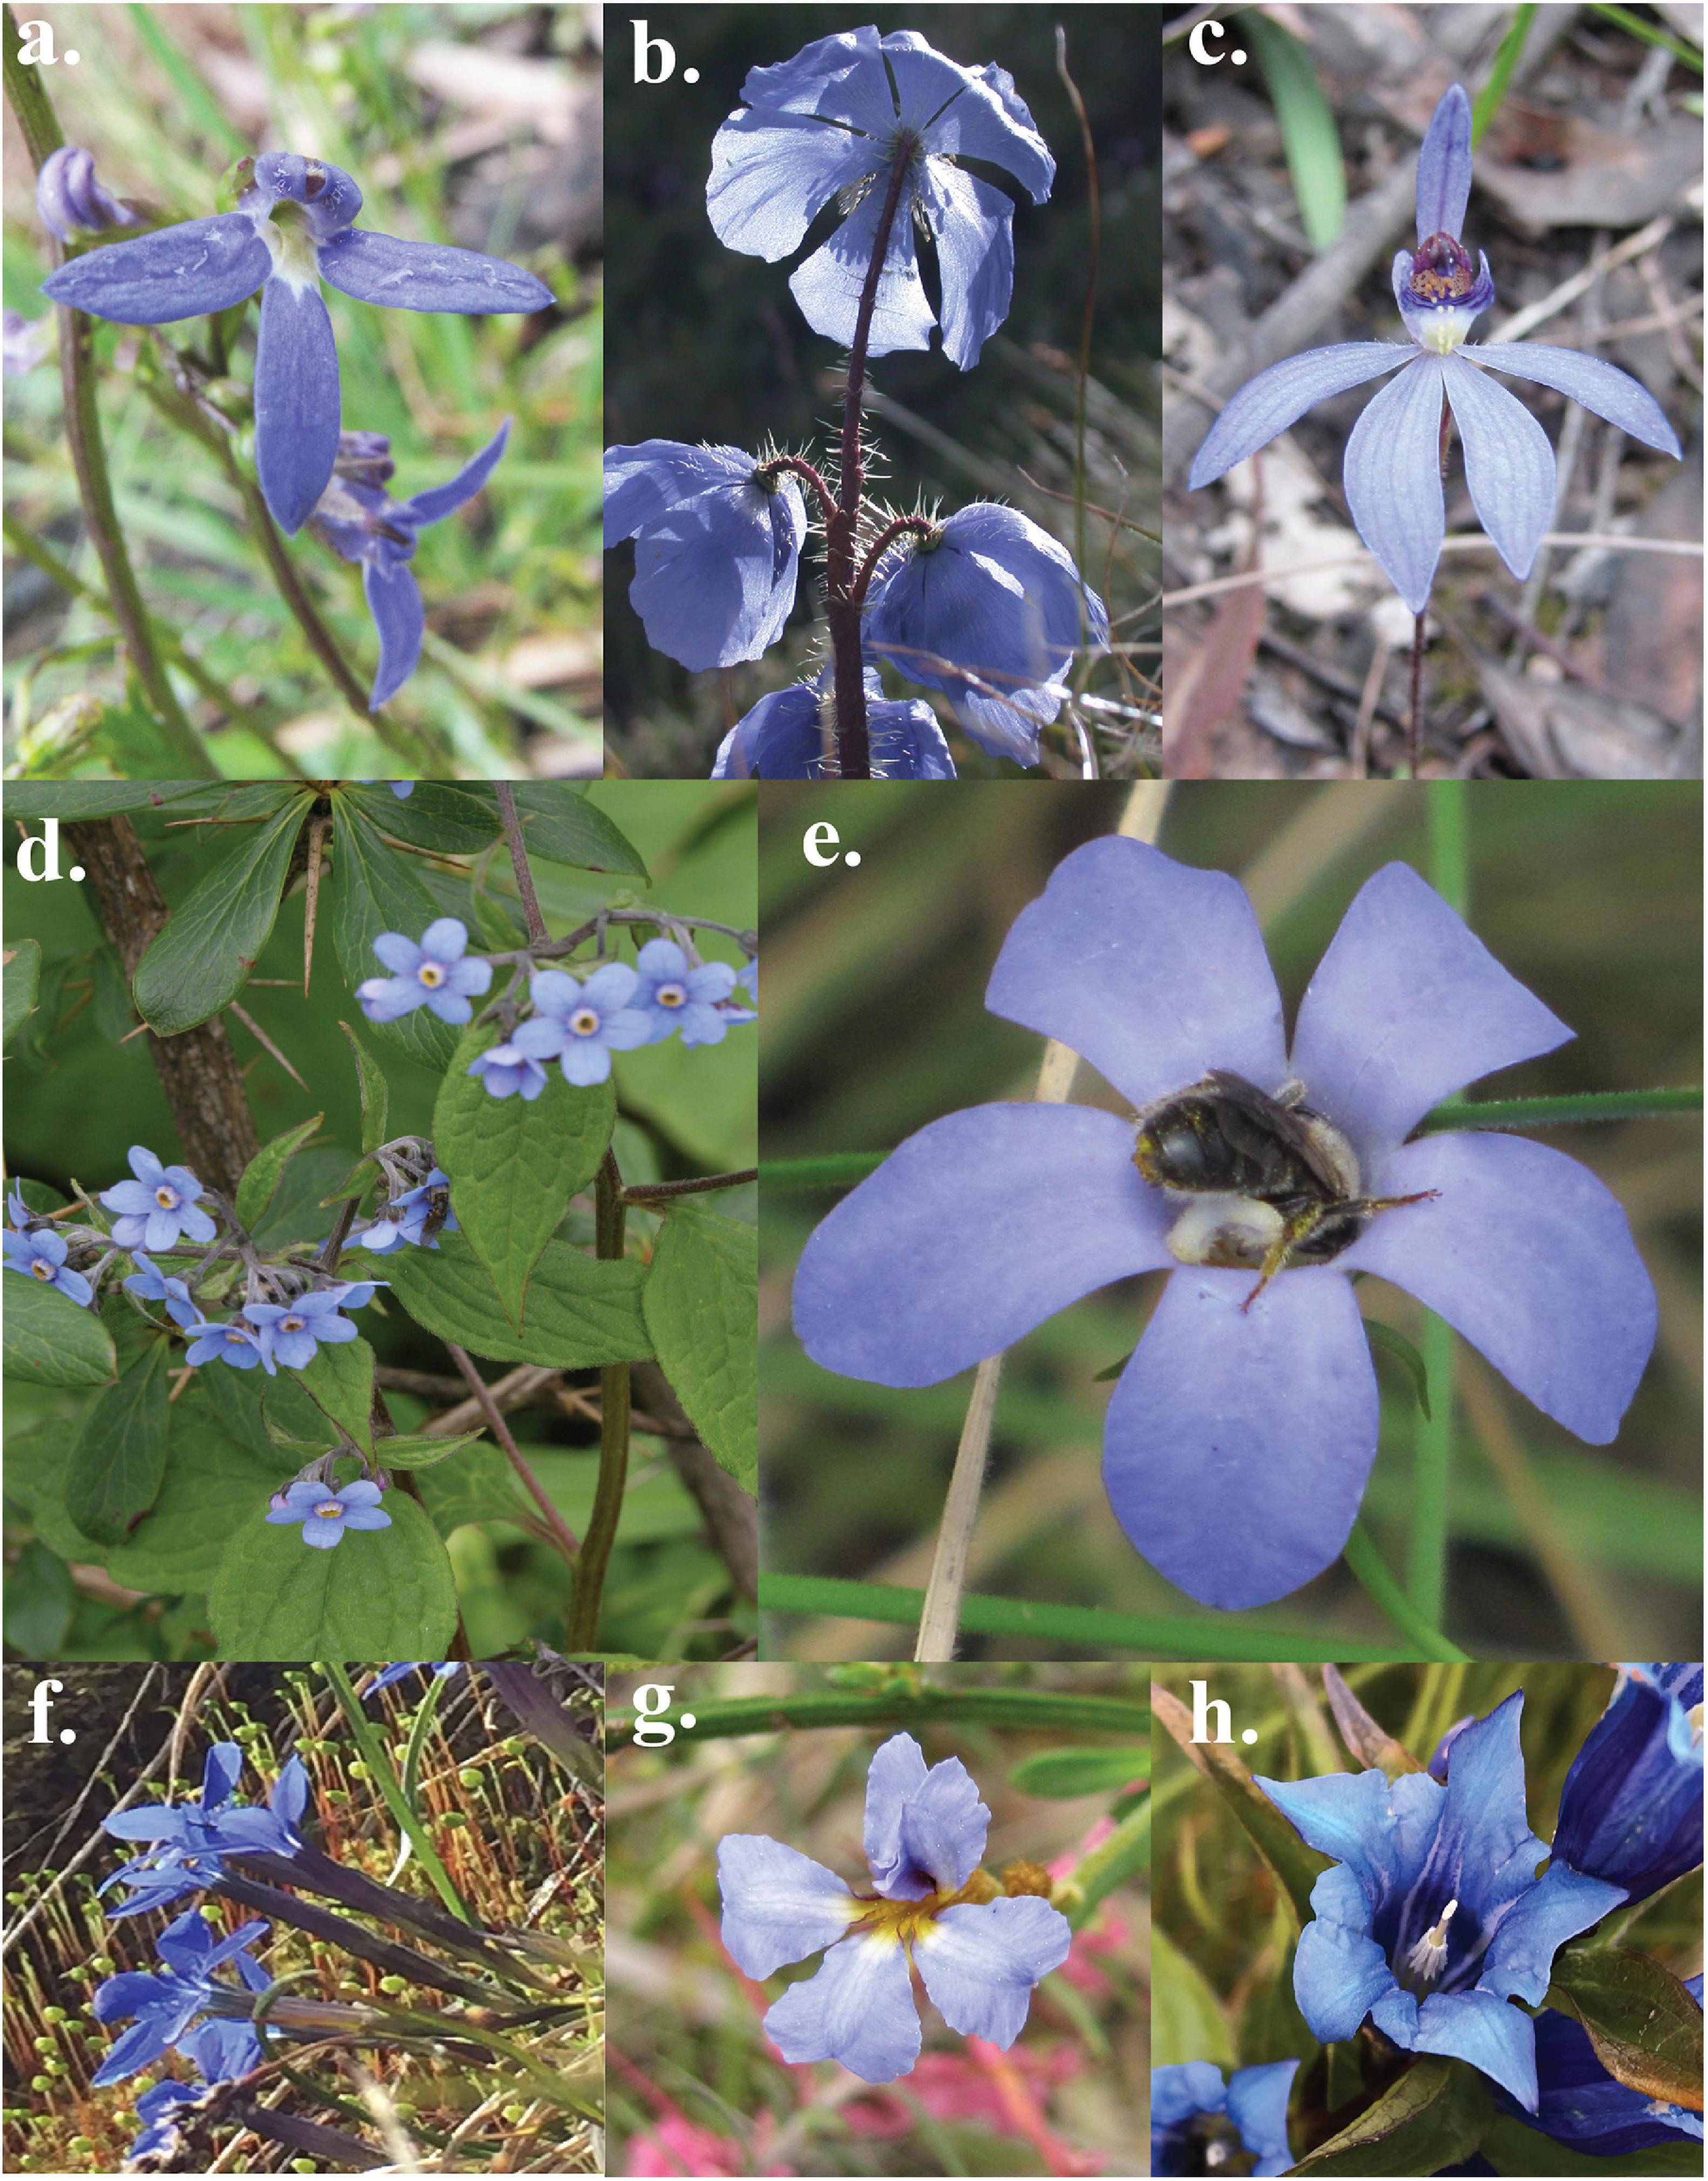 True Blue Chrysanthemum Flowers Produced with Genetic Engineering